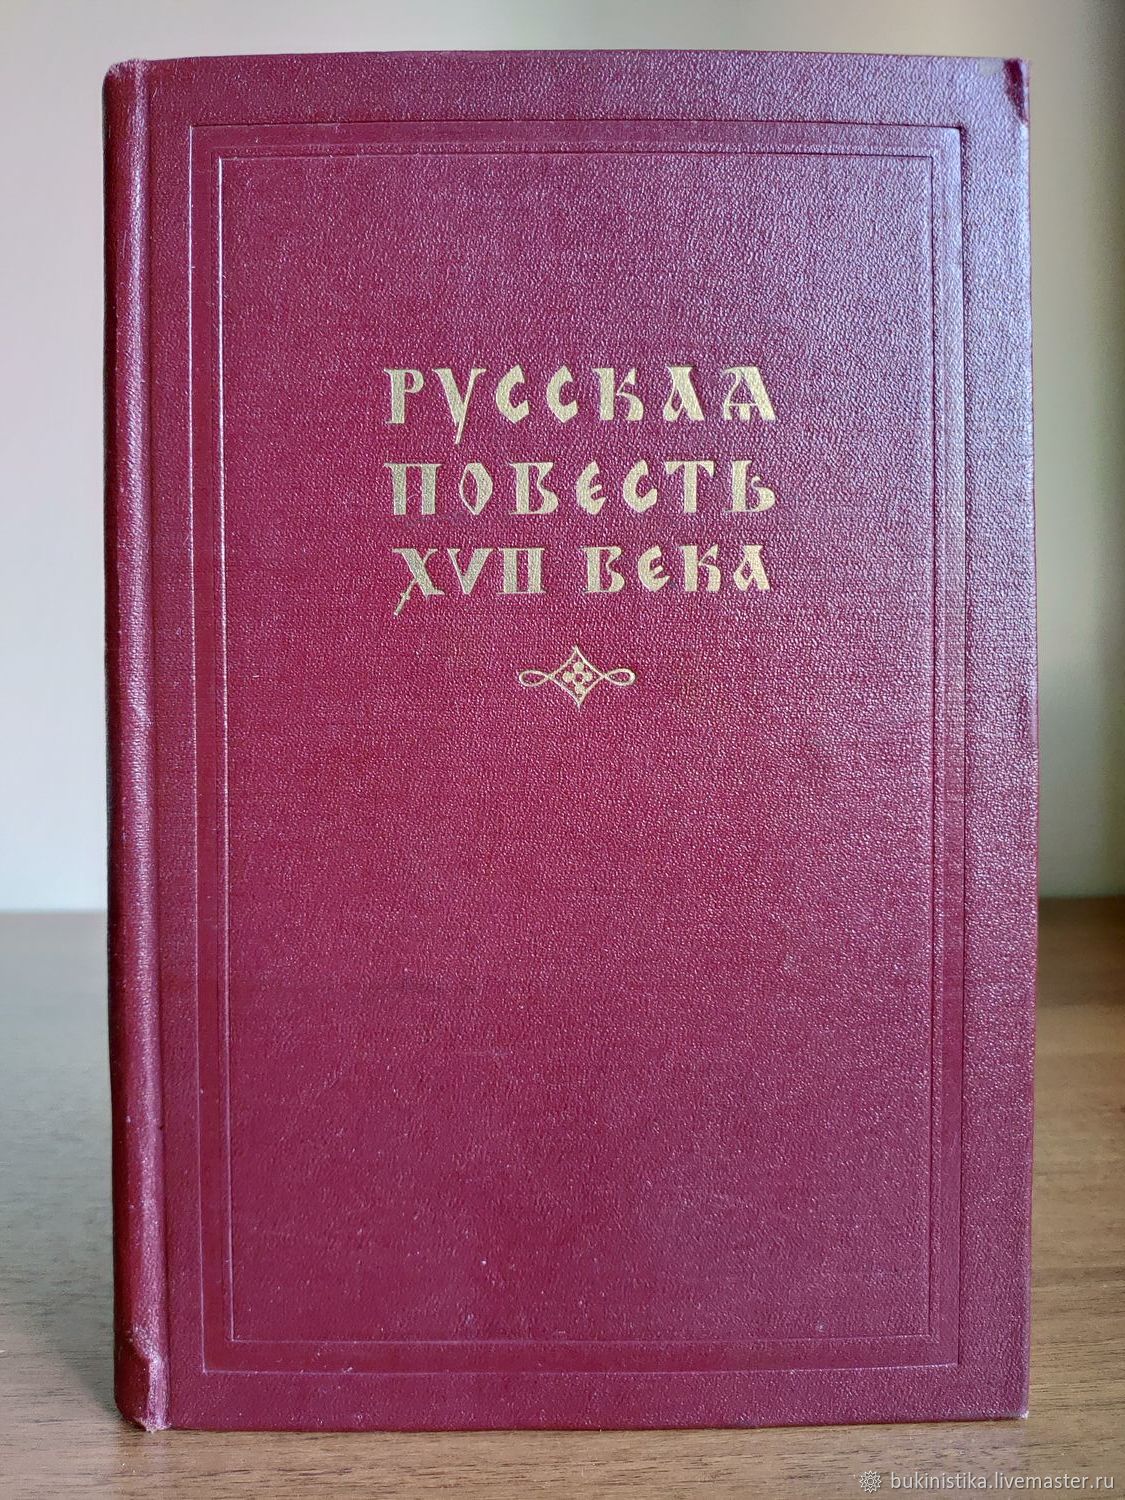 Книга 1954 года. Книги 1954 года. Старинные книги. Повести 17 века. Русские повести.